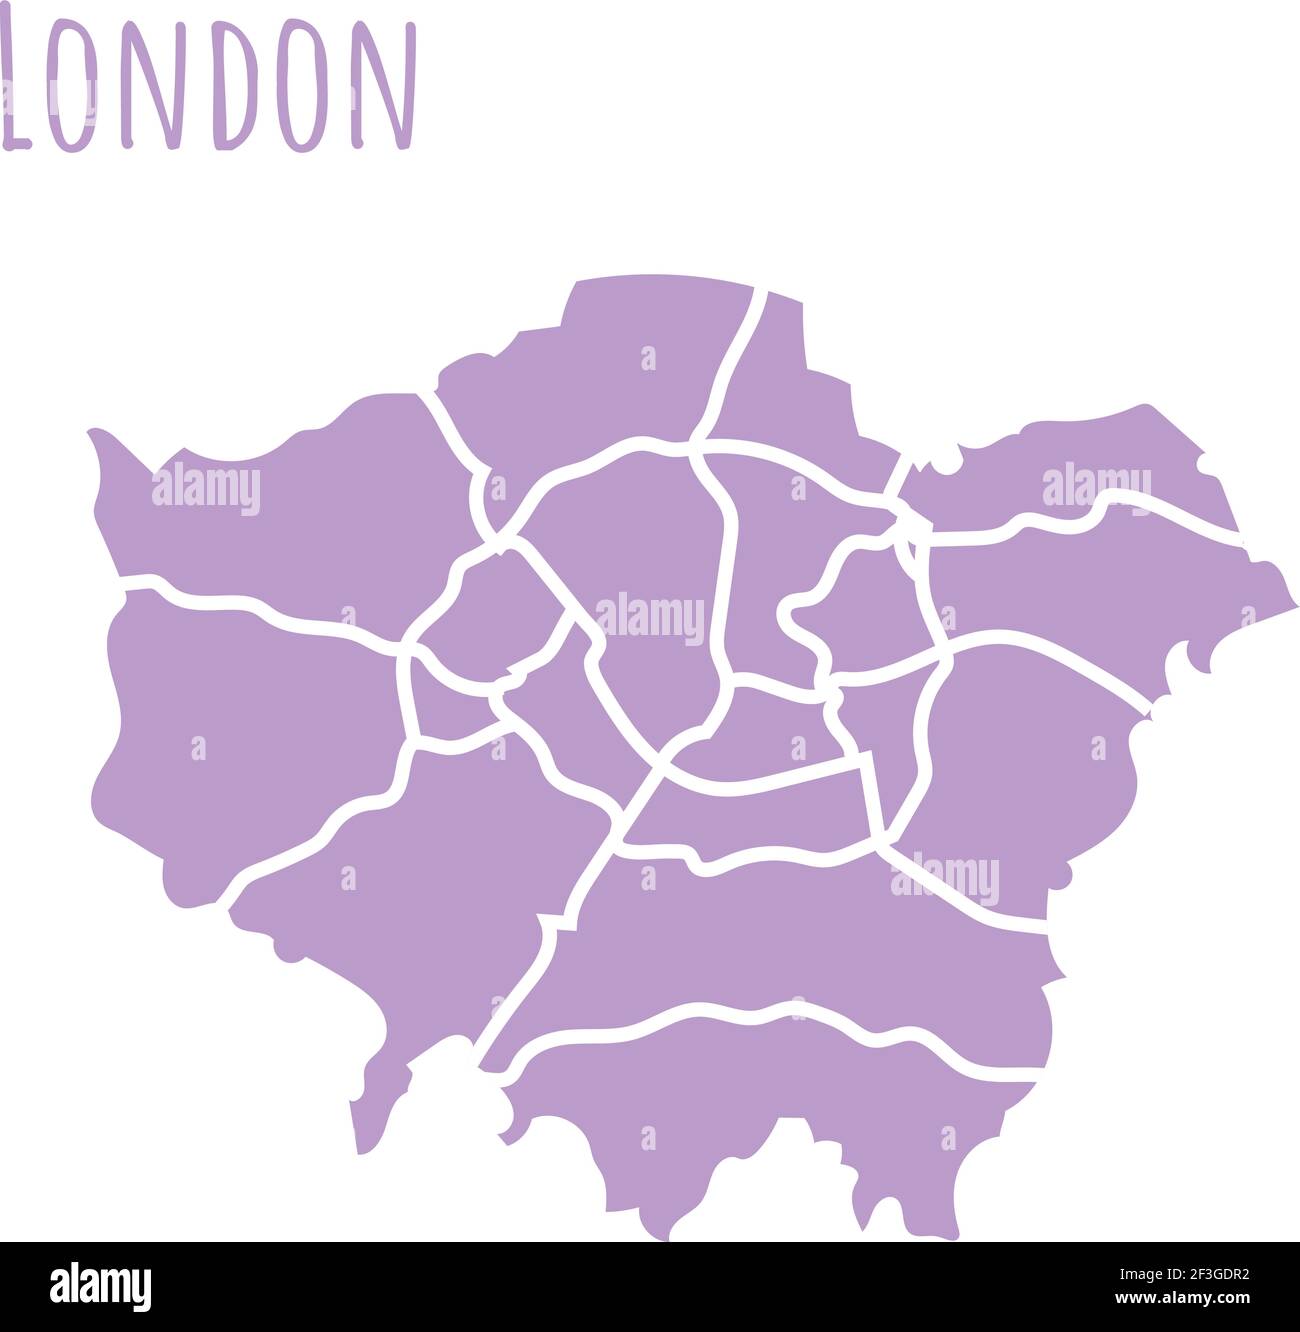 London, UK Karte Silhouette administrative Teilung, Vektor-Karte isoliert auf weißem Hintergrund. Grenzkarte mit Straßen. Detaillierte Darstellung. Kap Stock Vektor